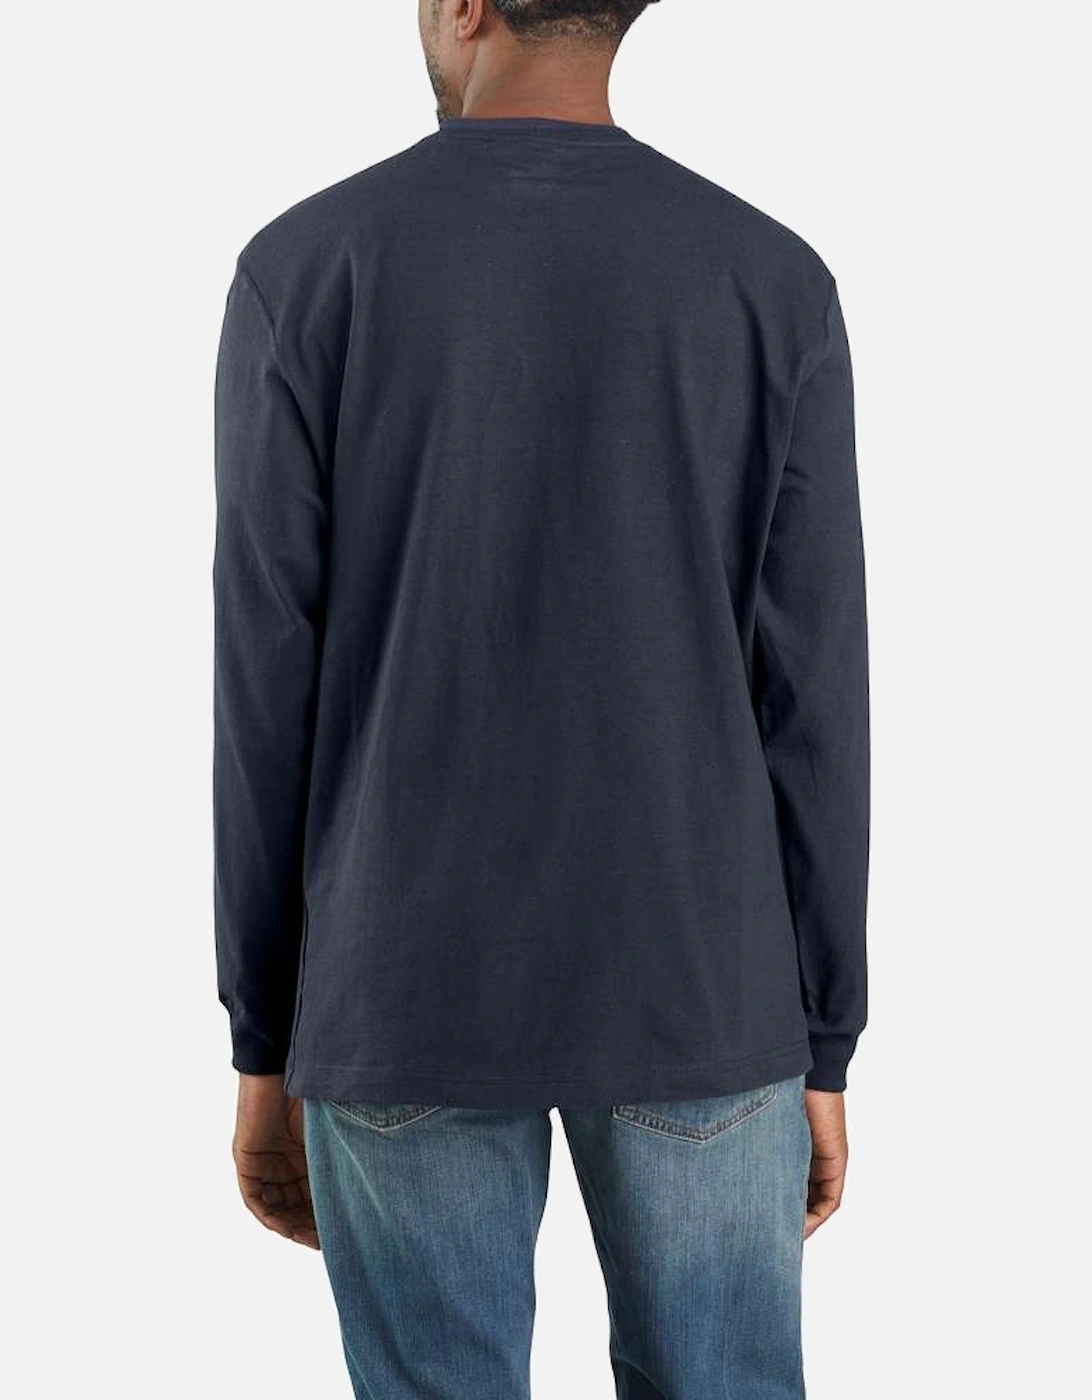 Carhartt Mens Workwear Pocket T Shirt Long Sleeve T Shirt